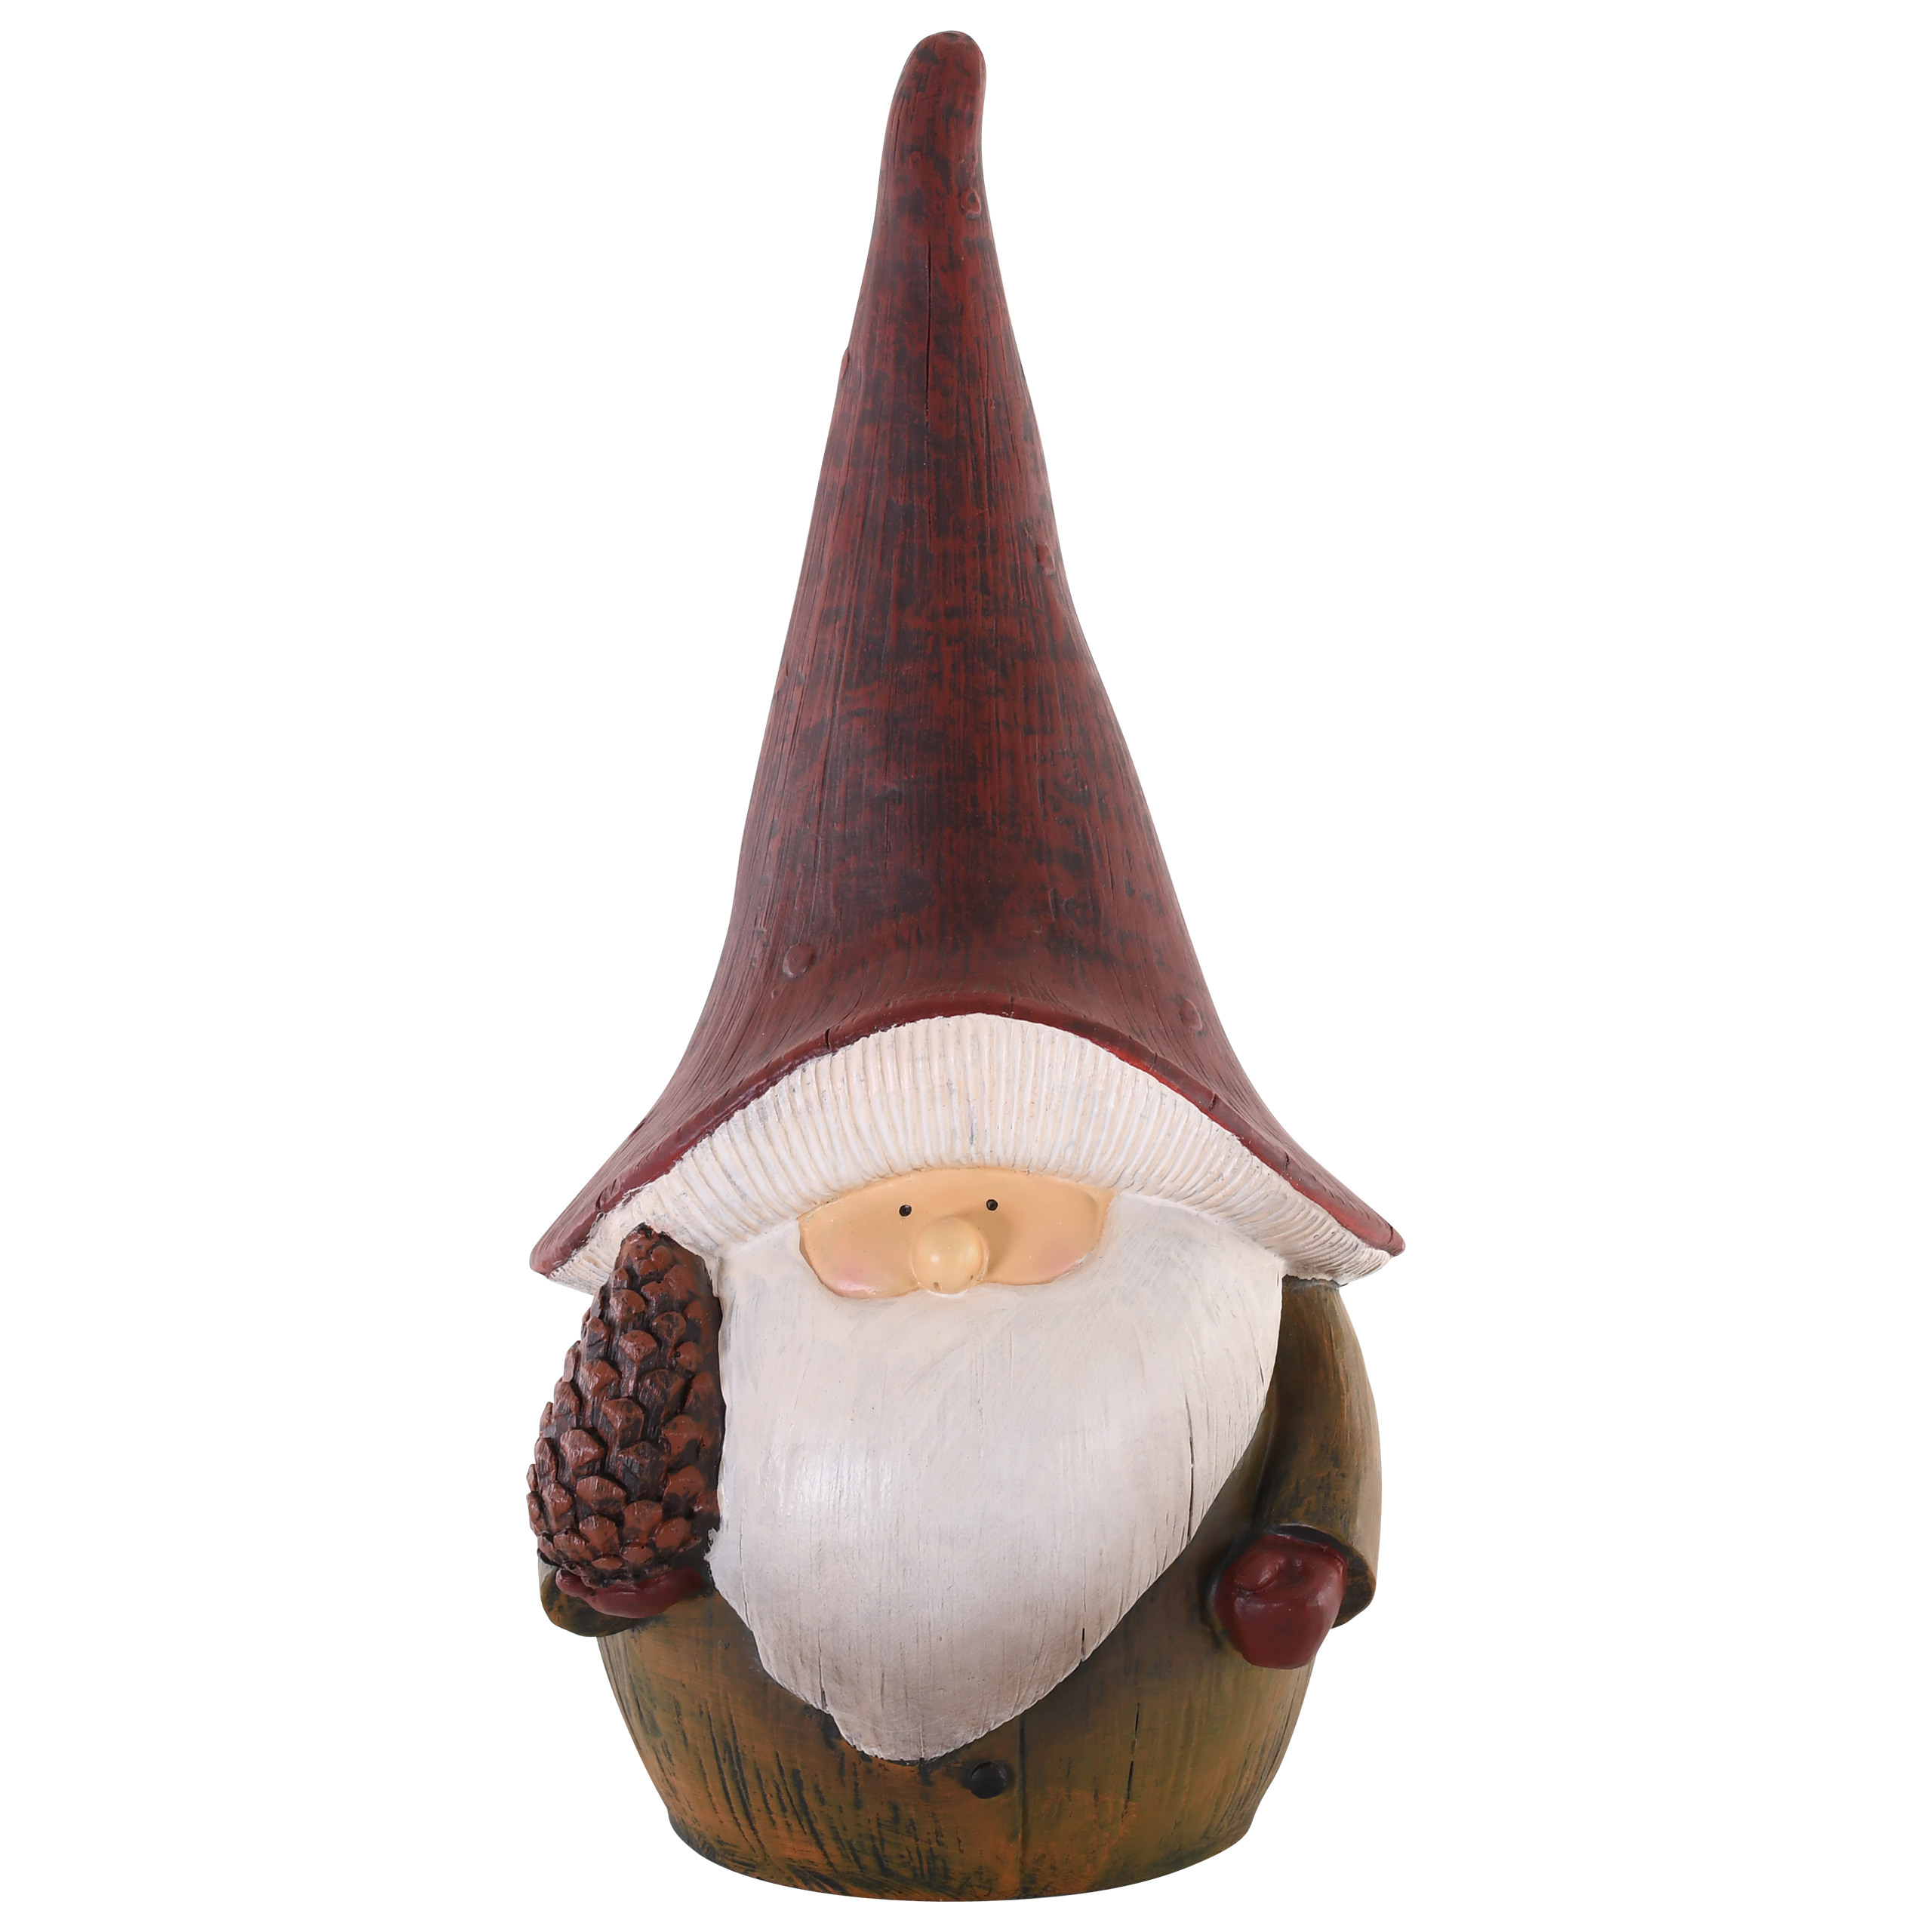 Raburg Dekofigur Pilzwichtel mit Tannenzapfen, groß, Mütze in Rot, Mantel Oliv-Braun, 58 cm hoch